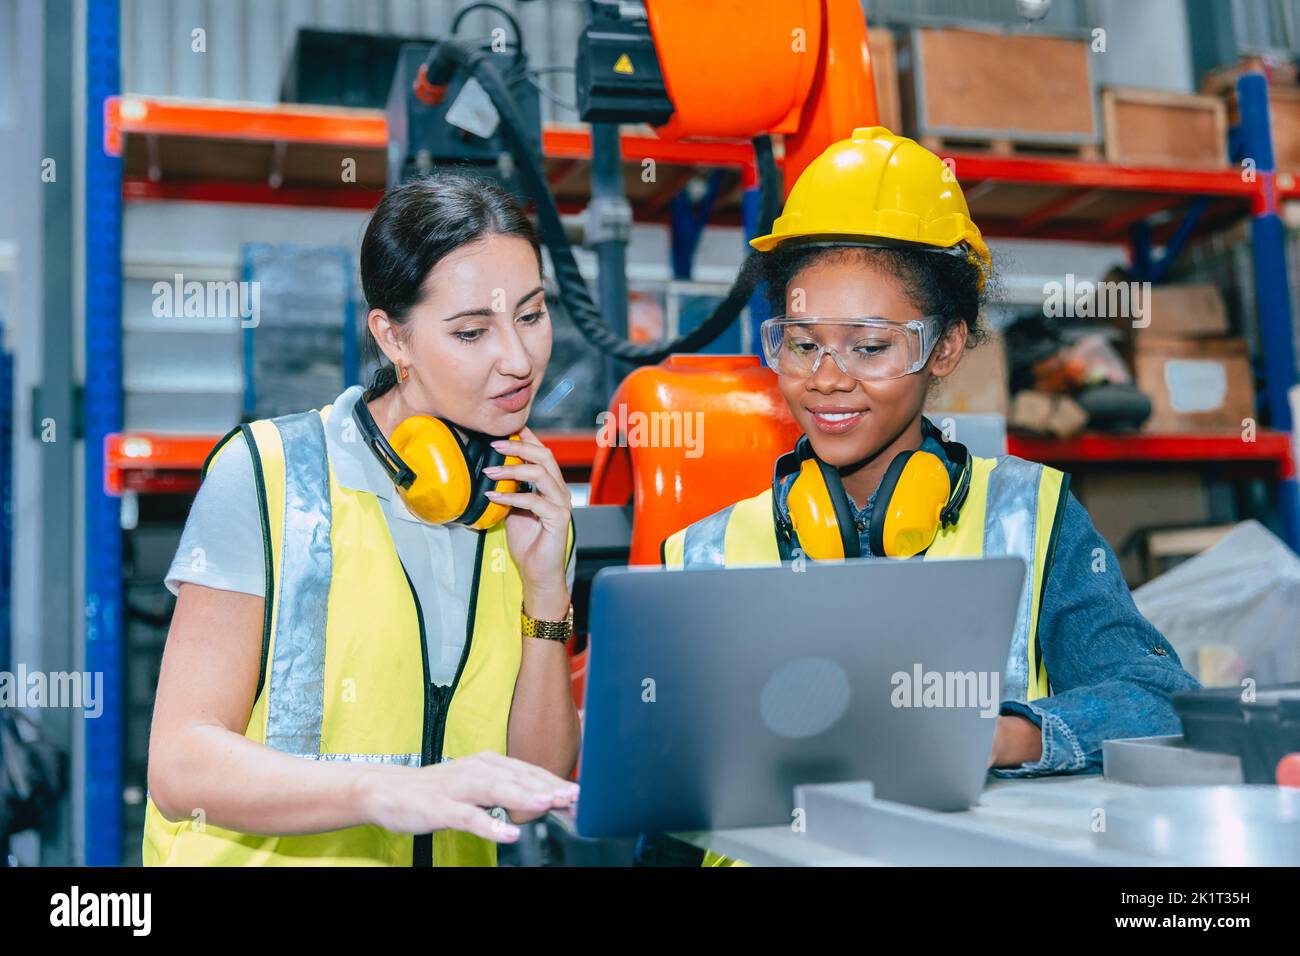 Formación conjunta del equipo de trabajo de las mujeres ingenieras en el trabajo en la moderna fábrica de máquinas de soldadura robótica avanzada. Foto de stock